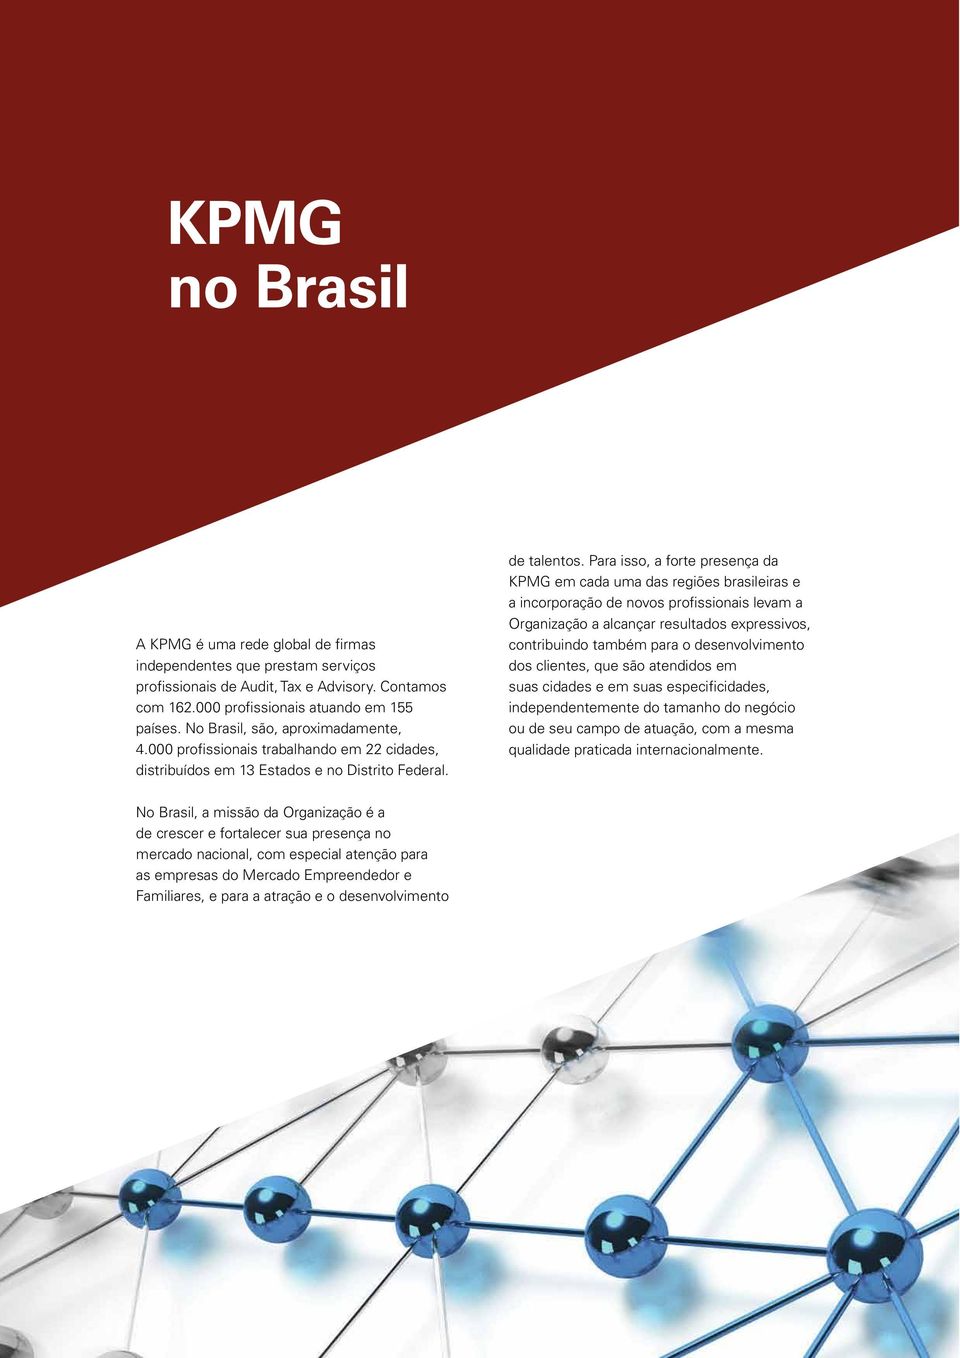 Para isso, a forte presença da KPMG em cada uma das regiões brasileiras e a incorporação de novos profissionais levam a Organização a alcançar resultados expressivos, contribuindo também para o